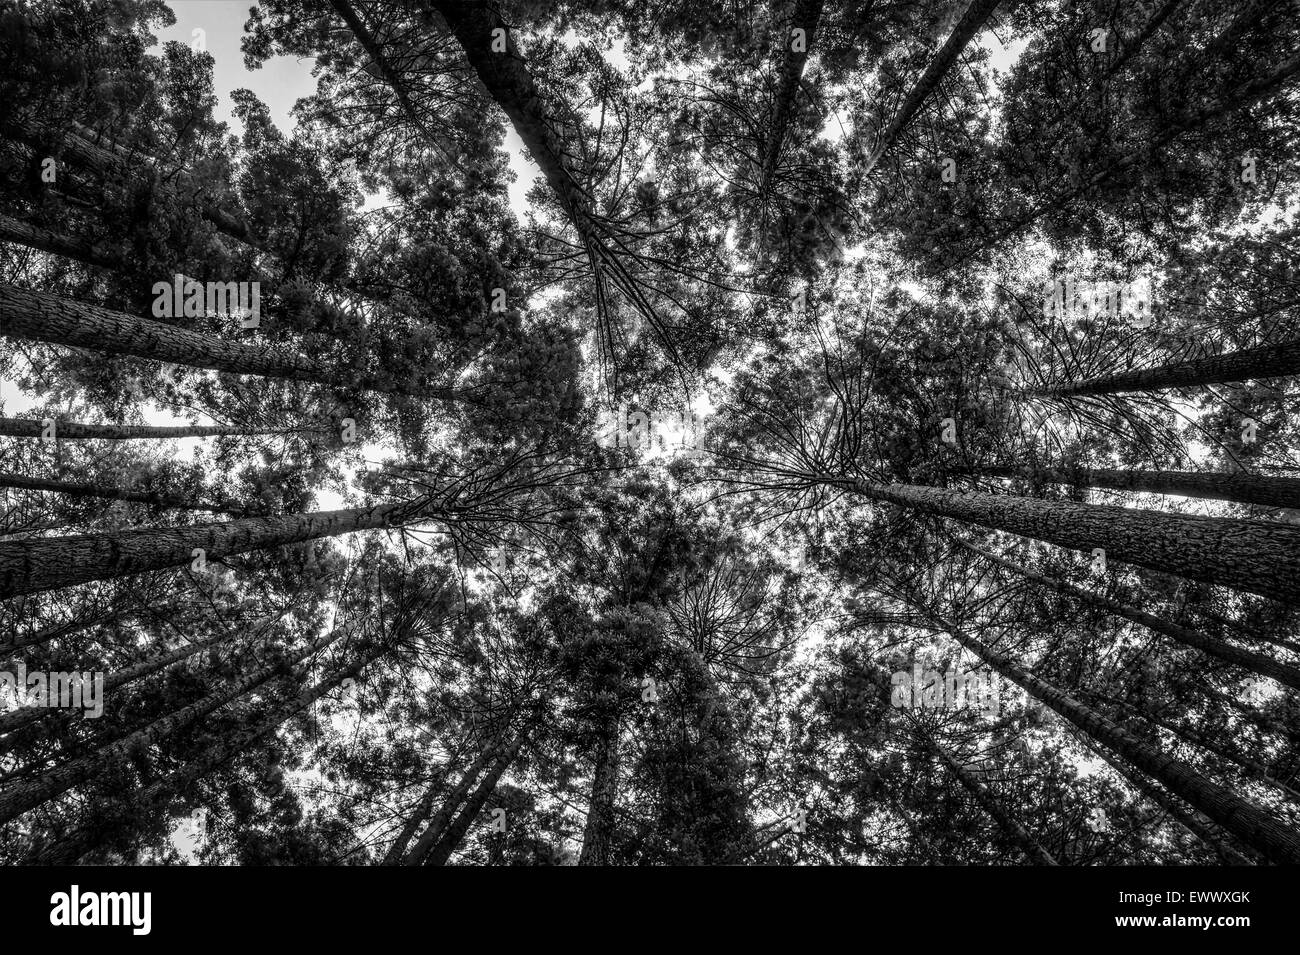 Guardando verso l'alto in una foresta di Redwood. Immagine in bianco e nero. Foto Stock